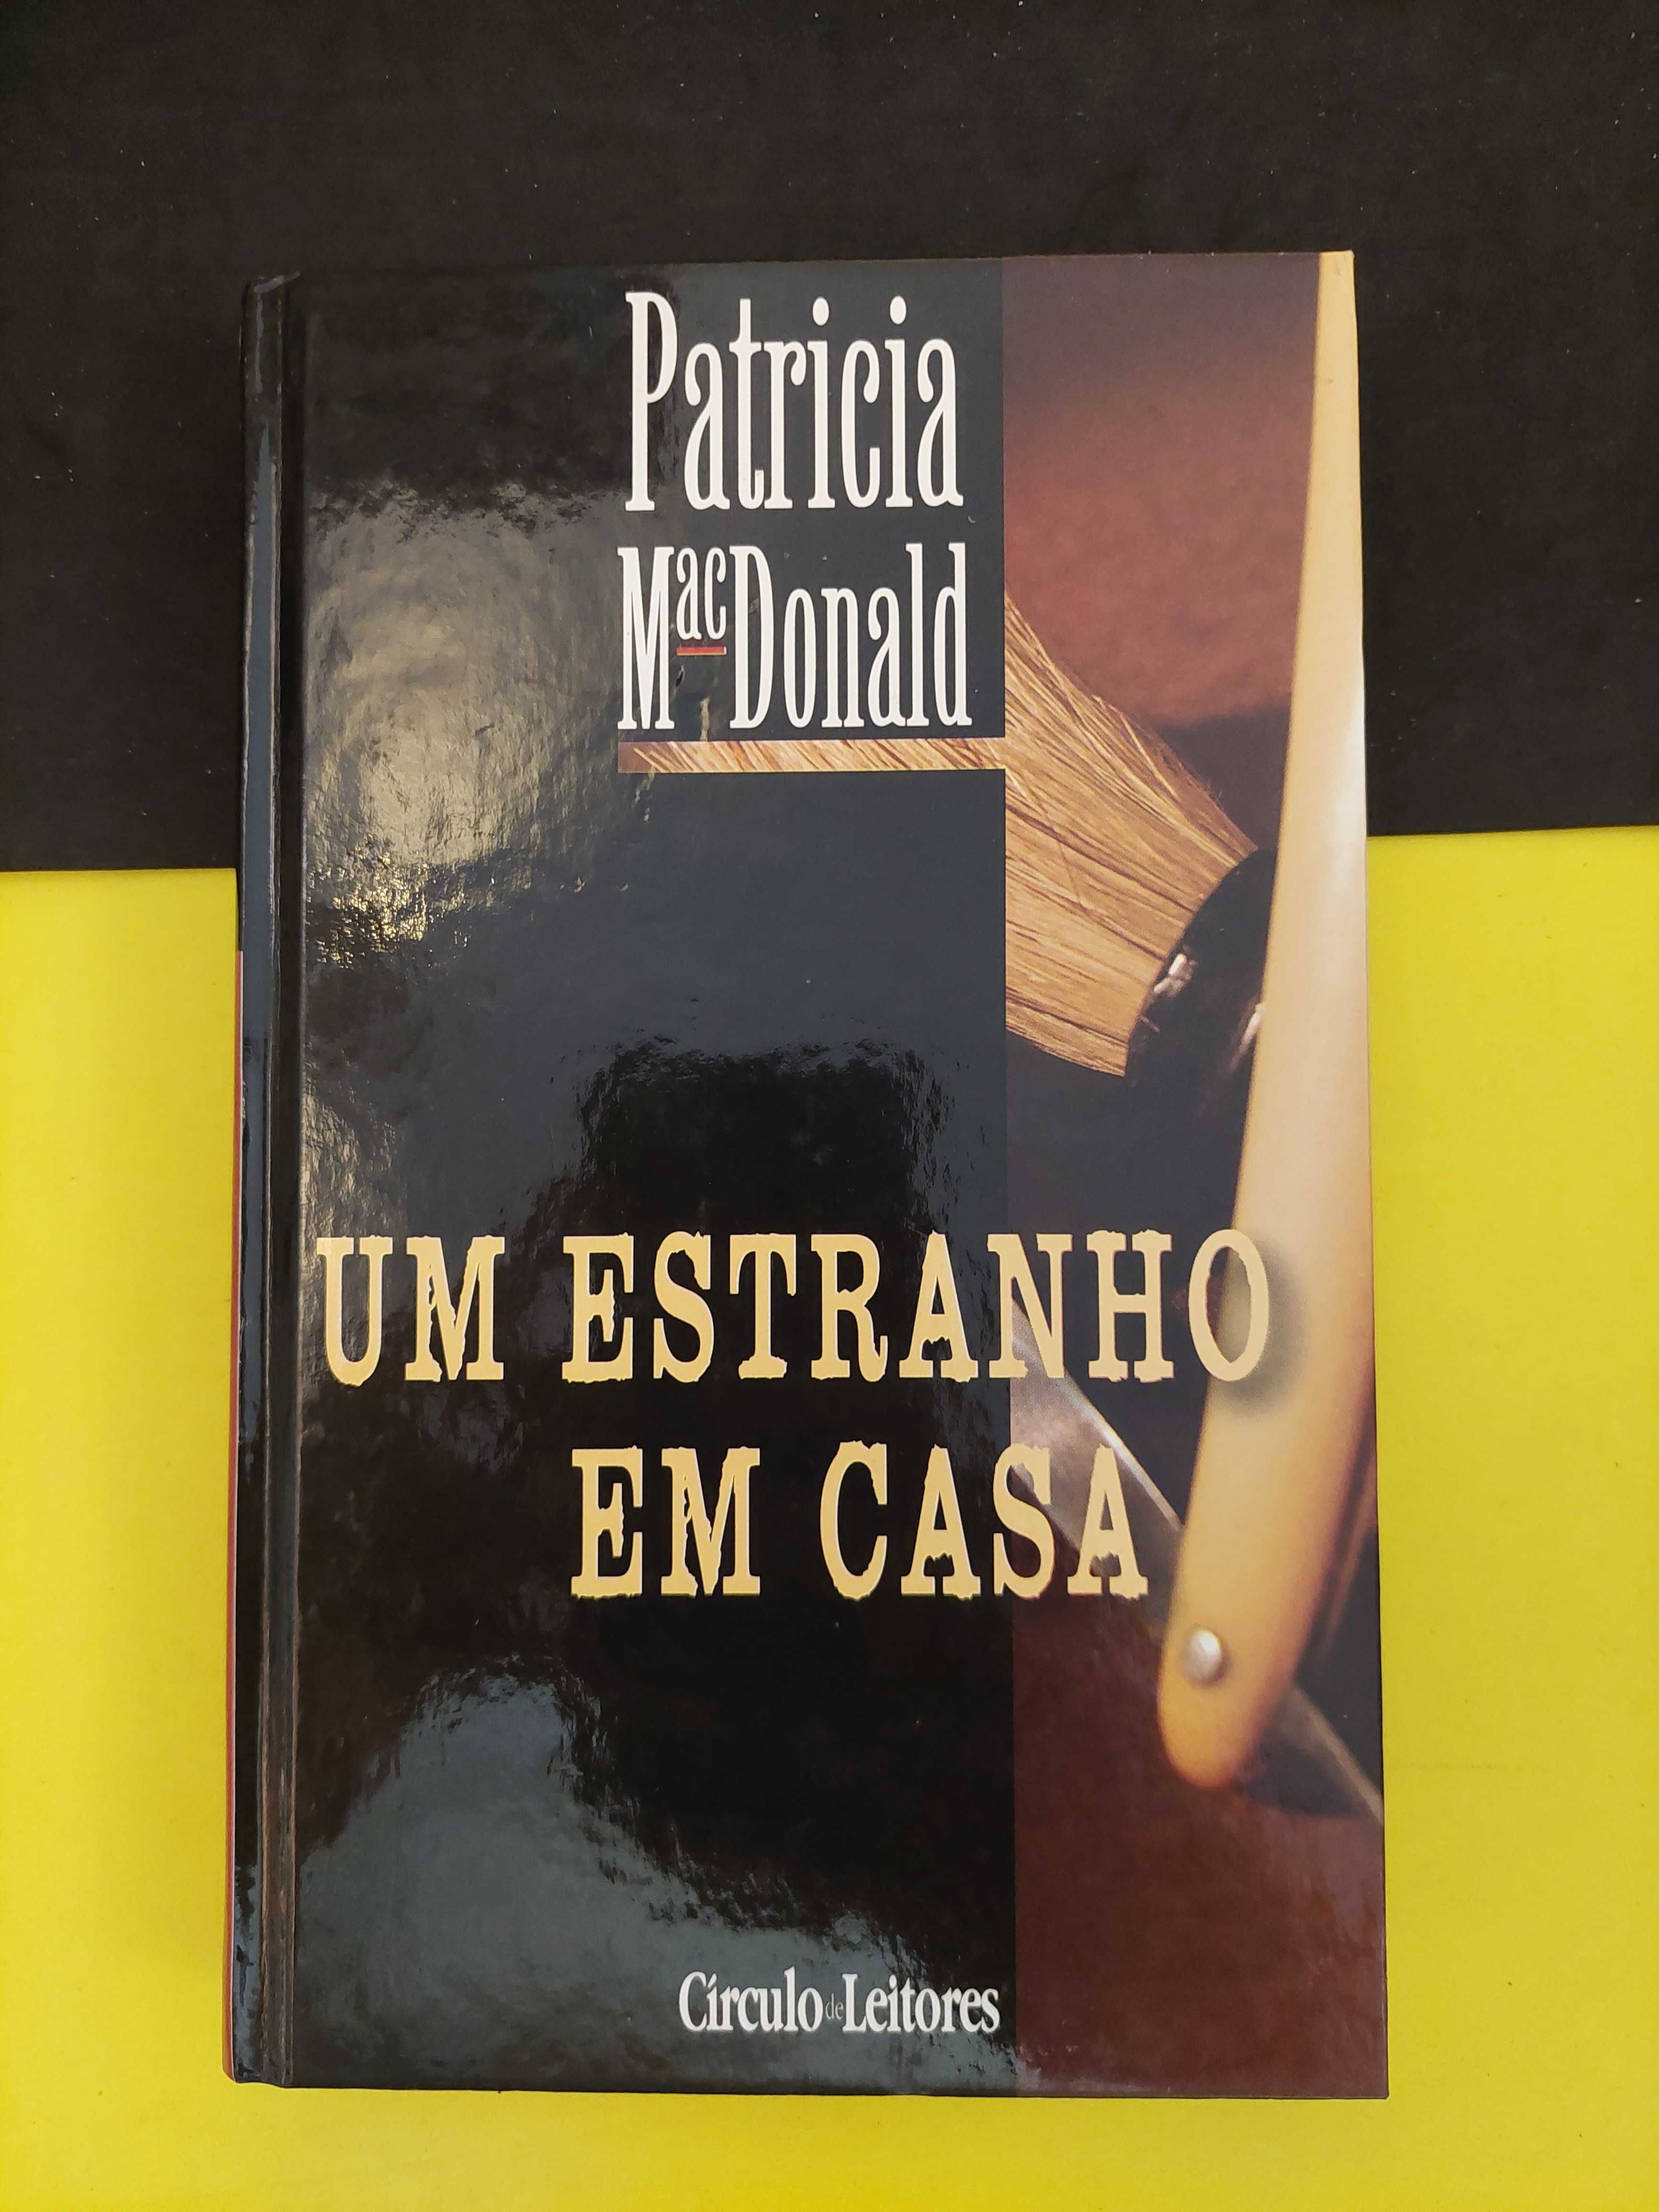 Patricia MacDonald - Um Estranho em Casa